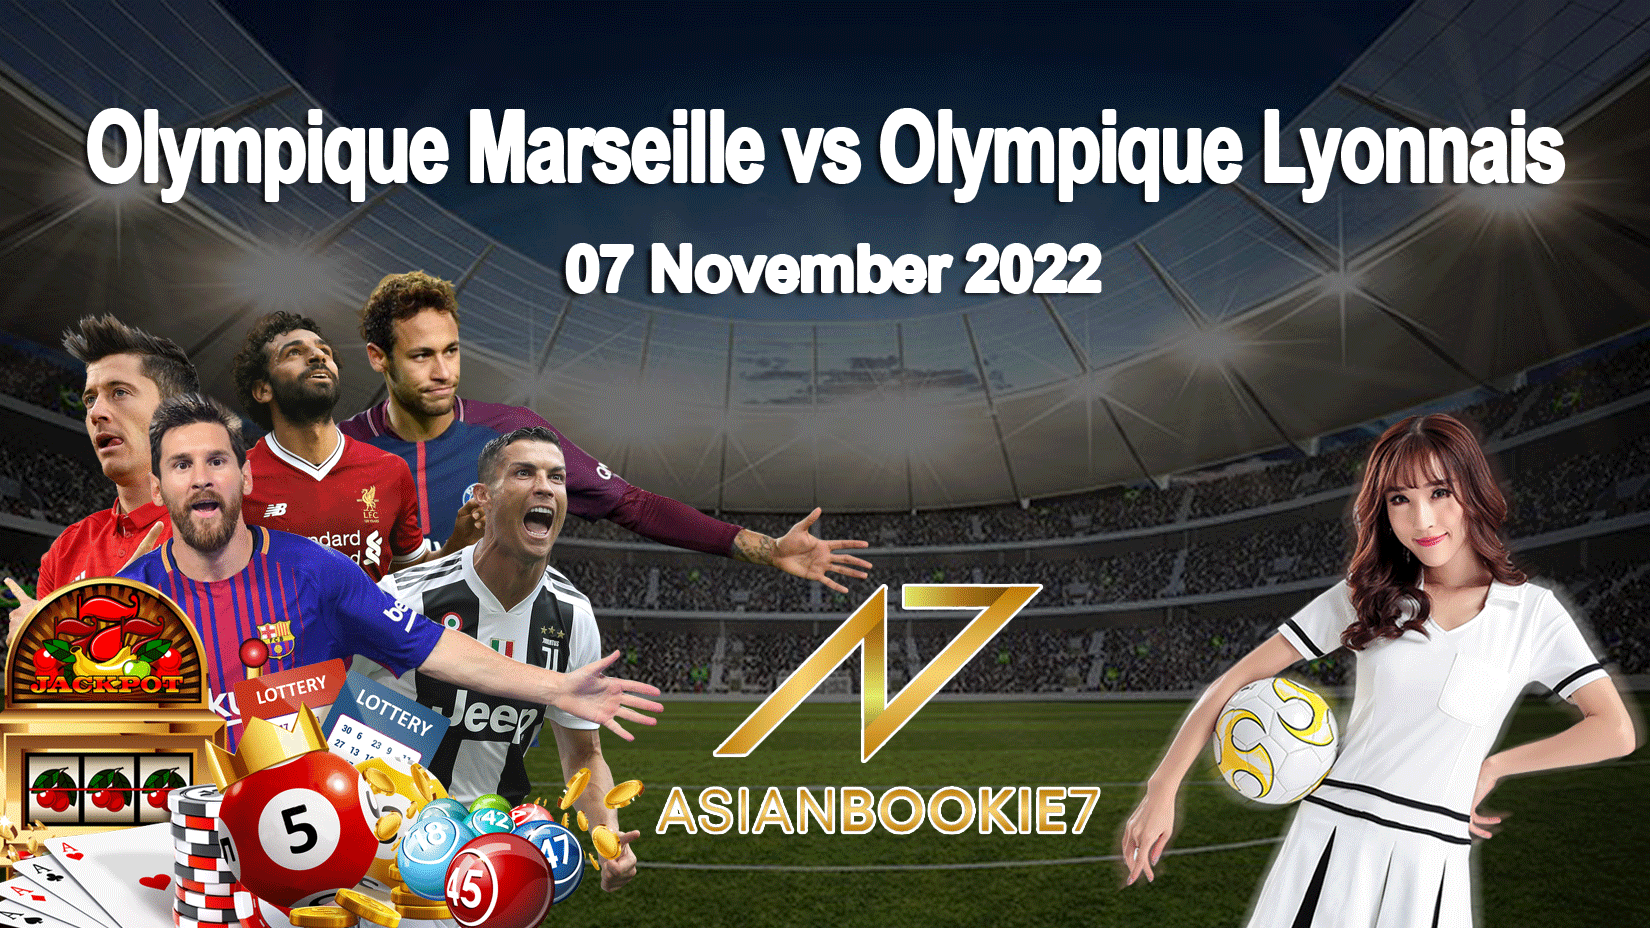 Prediksi Olympique Marseille vs Olympique Lyonnais 07 November 2022